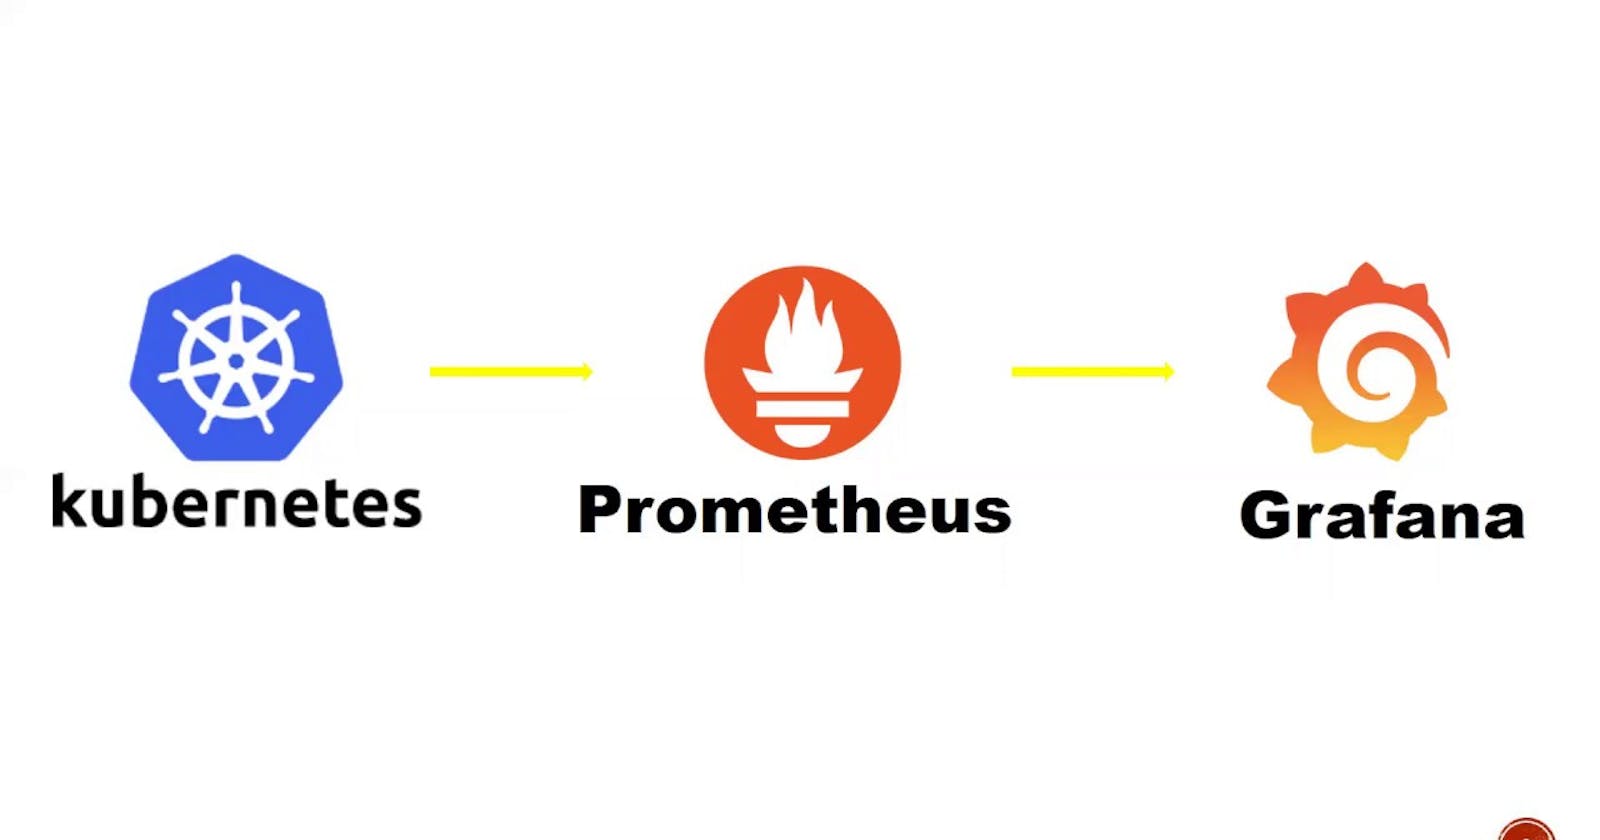 Kubernetes monitoring using Prometheus and Grafana